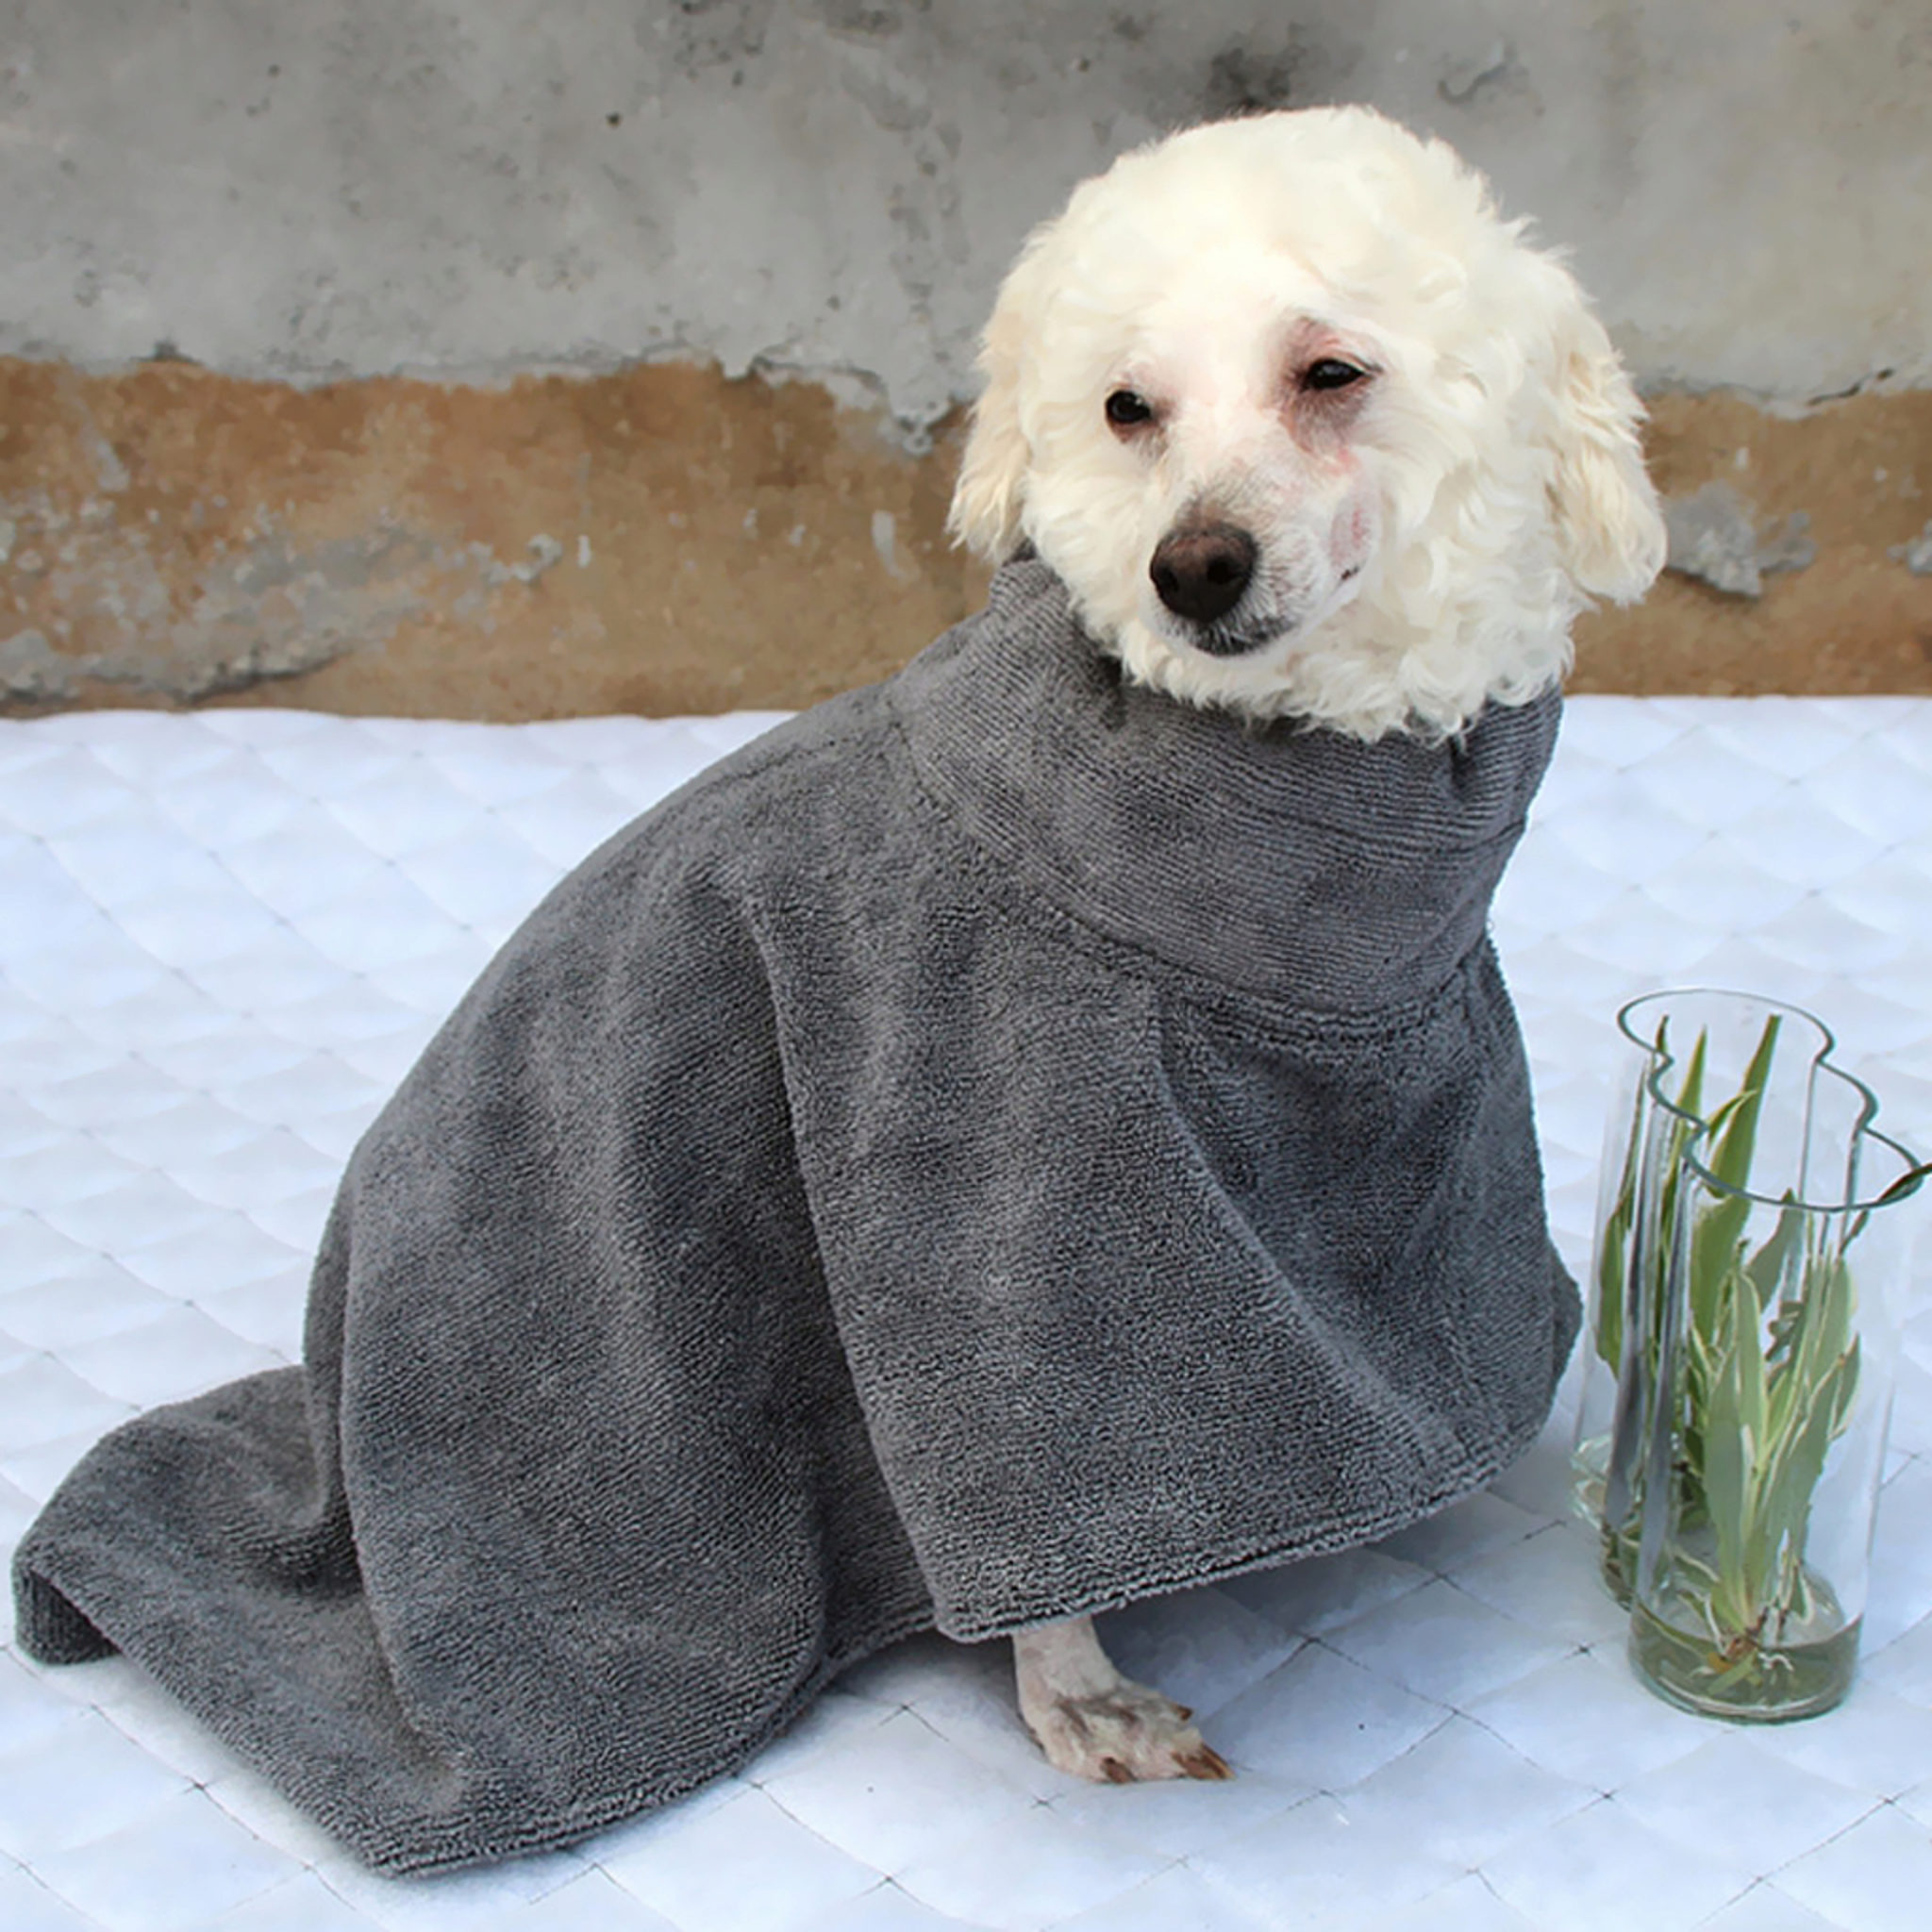 5 Migliori Asciugamani Per Cani Per Asciugare Il Tuo Cagnolino